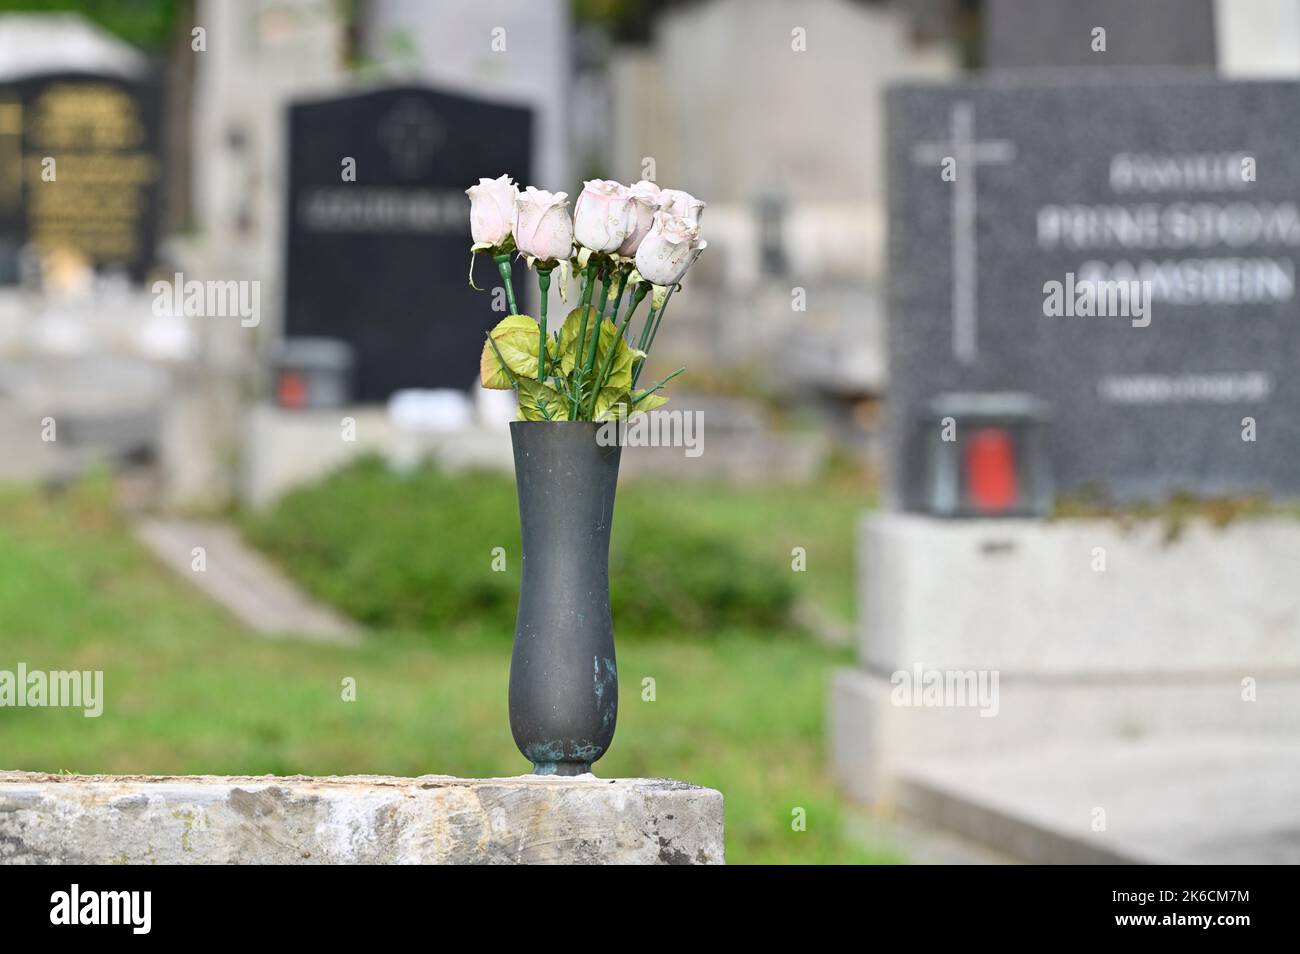 Vienne, Autriche. Le cimetière central de Vienne. Vase avec fleurs en plastique Banque D'Images